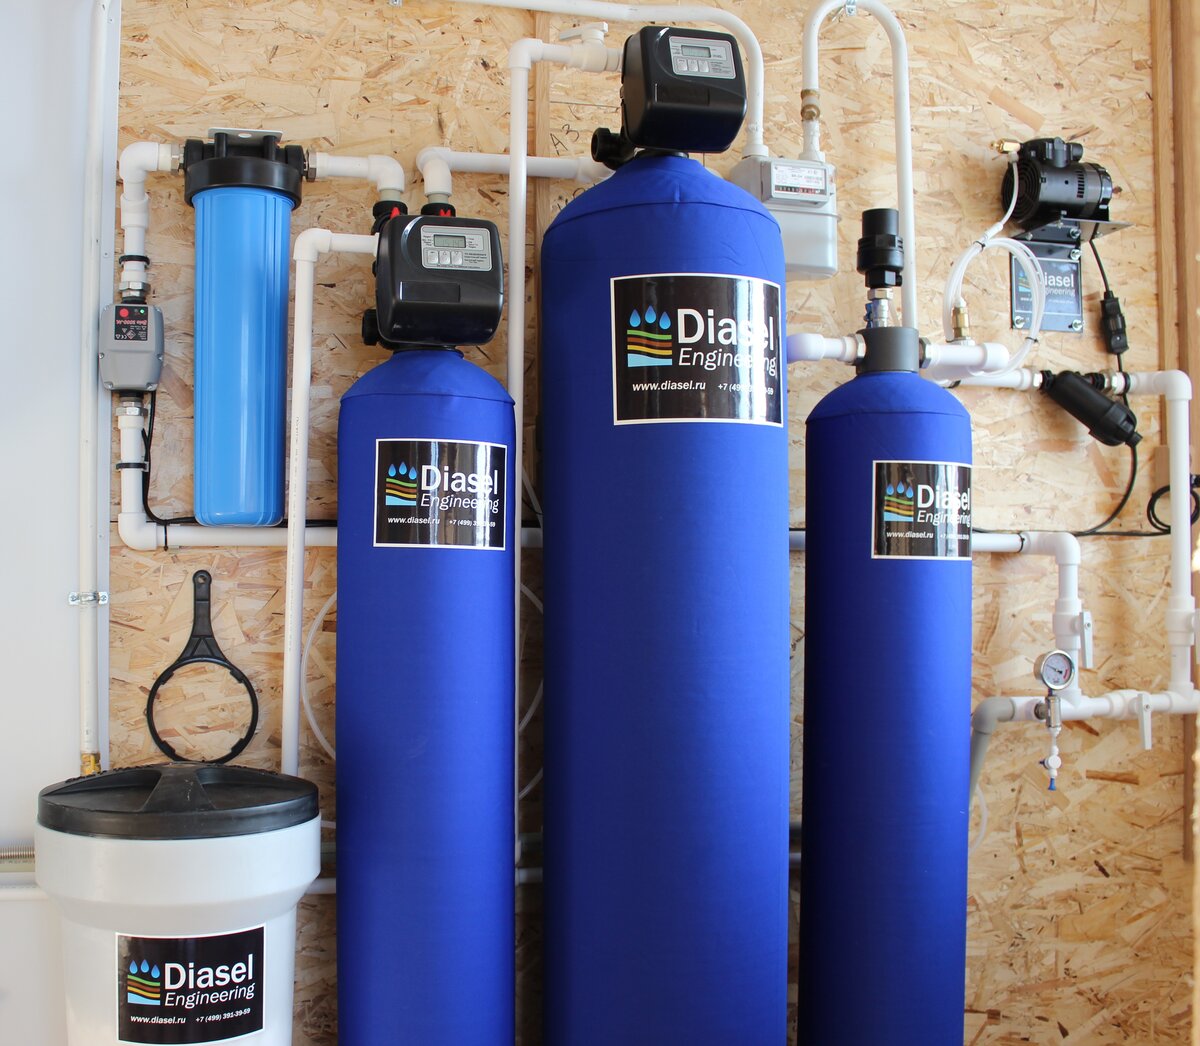 Фильтр для железистой воды. Система обезжелезивания воды для скважины. Станция обезжелезивания воды из скважины. Фильтр обезжелезиватель для воды из скважины. Система очистки воды из скважины от железа.